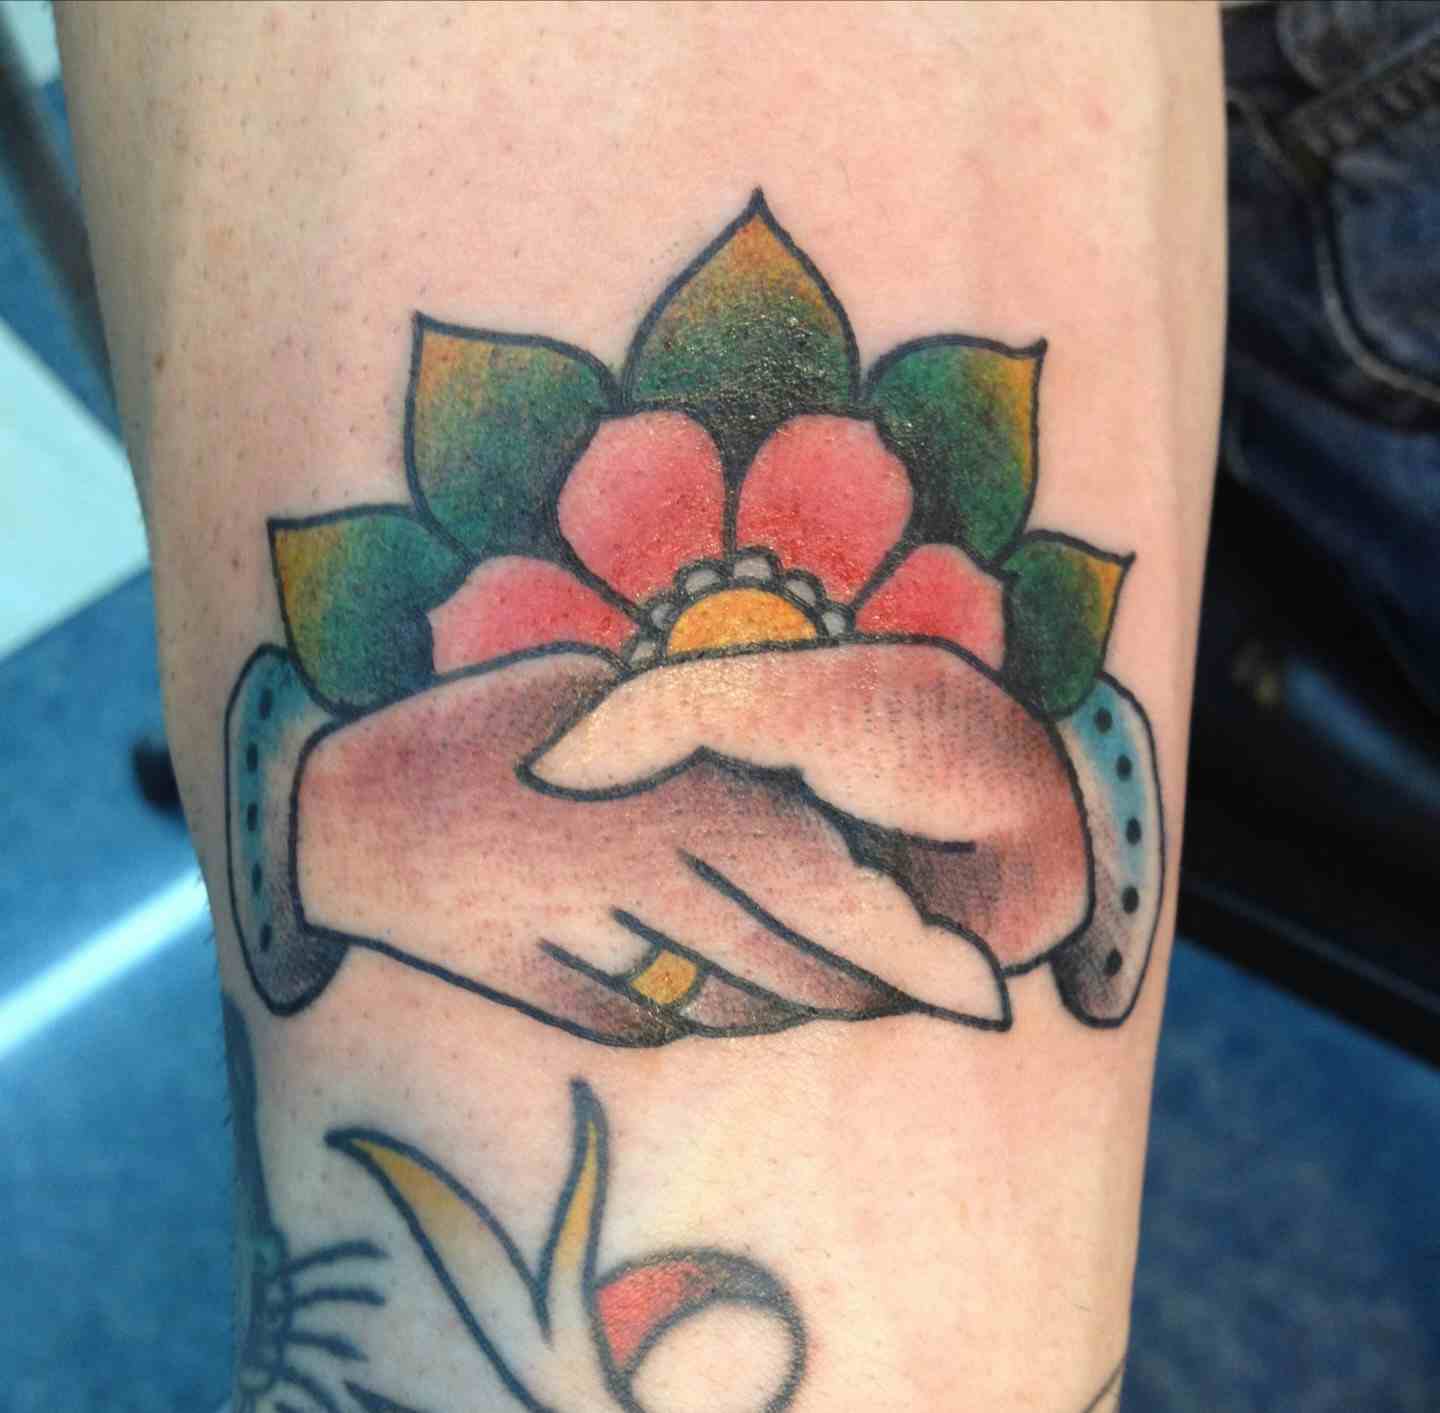 Shaking hands tattoo